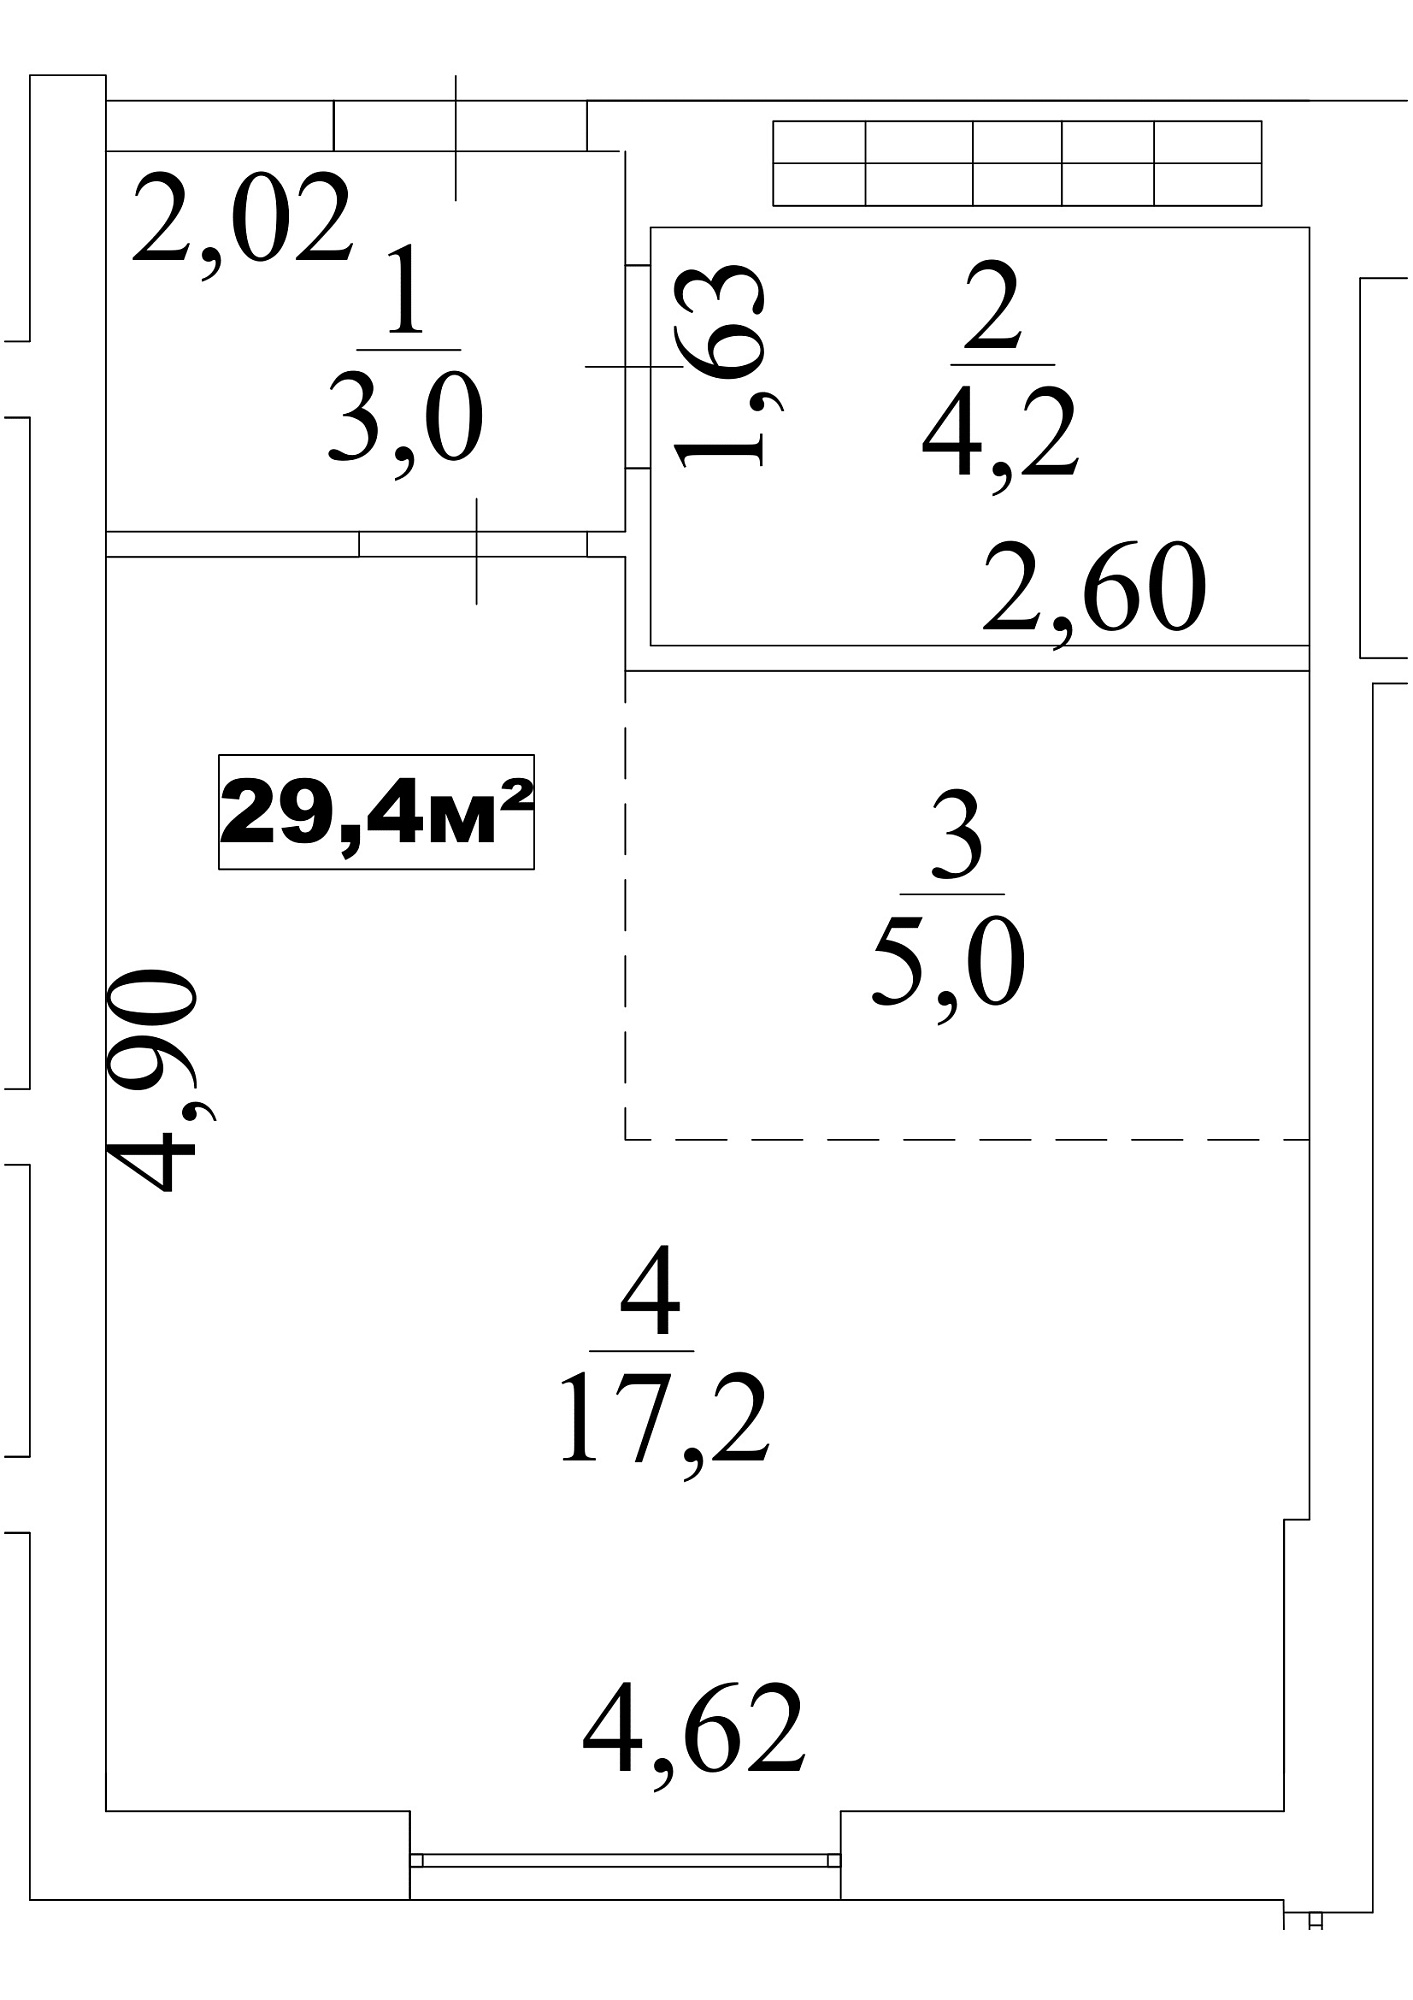 Планування Smart-квартира площею 29.4м2, AB-10-08/00072.